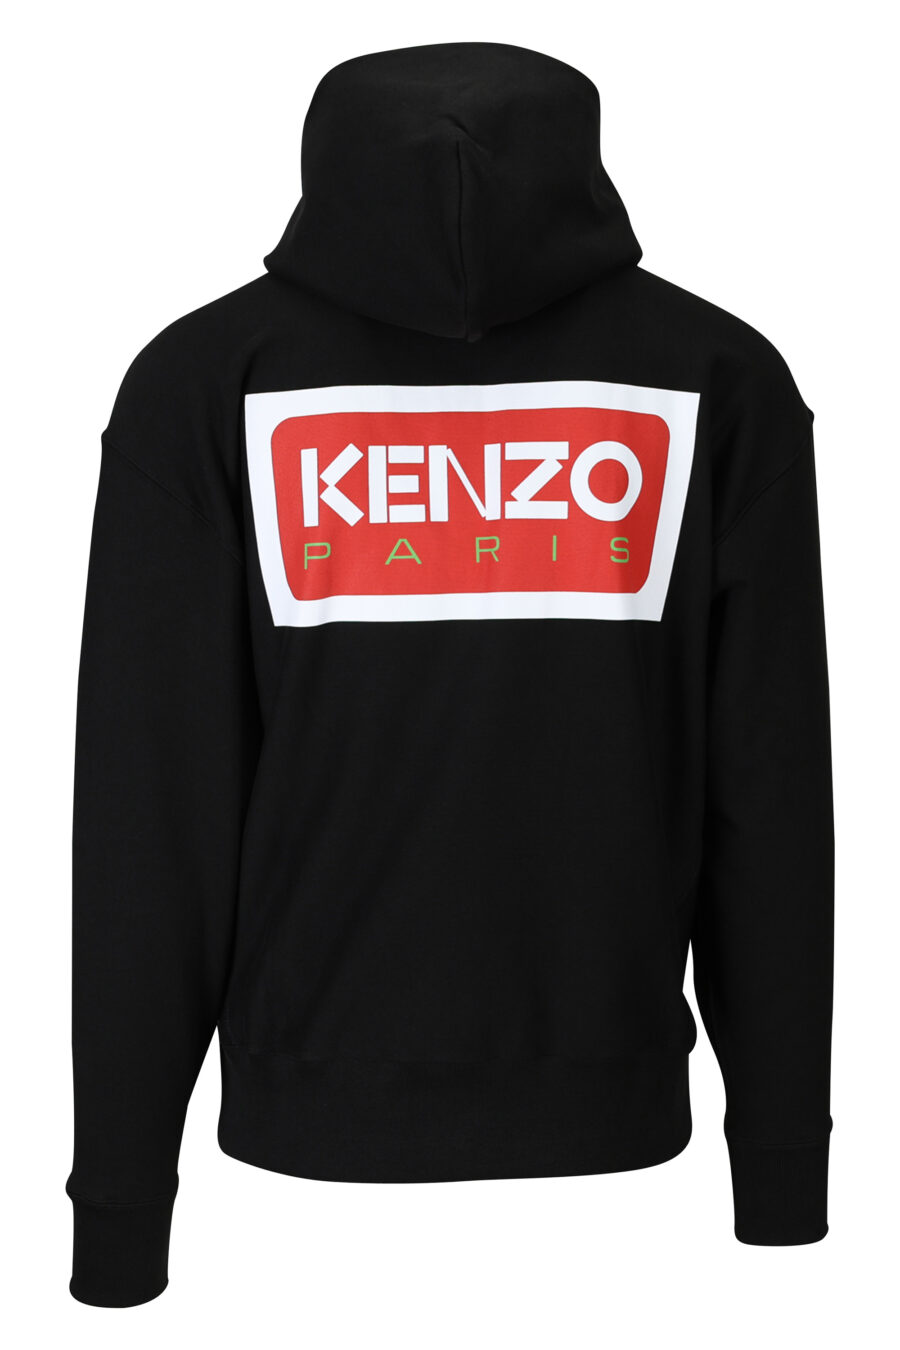 Sweat oversize noir avec capuche et fermeture éclair et logo "kenzo paris" - 3612230539334 1